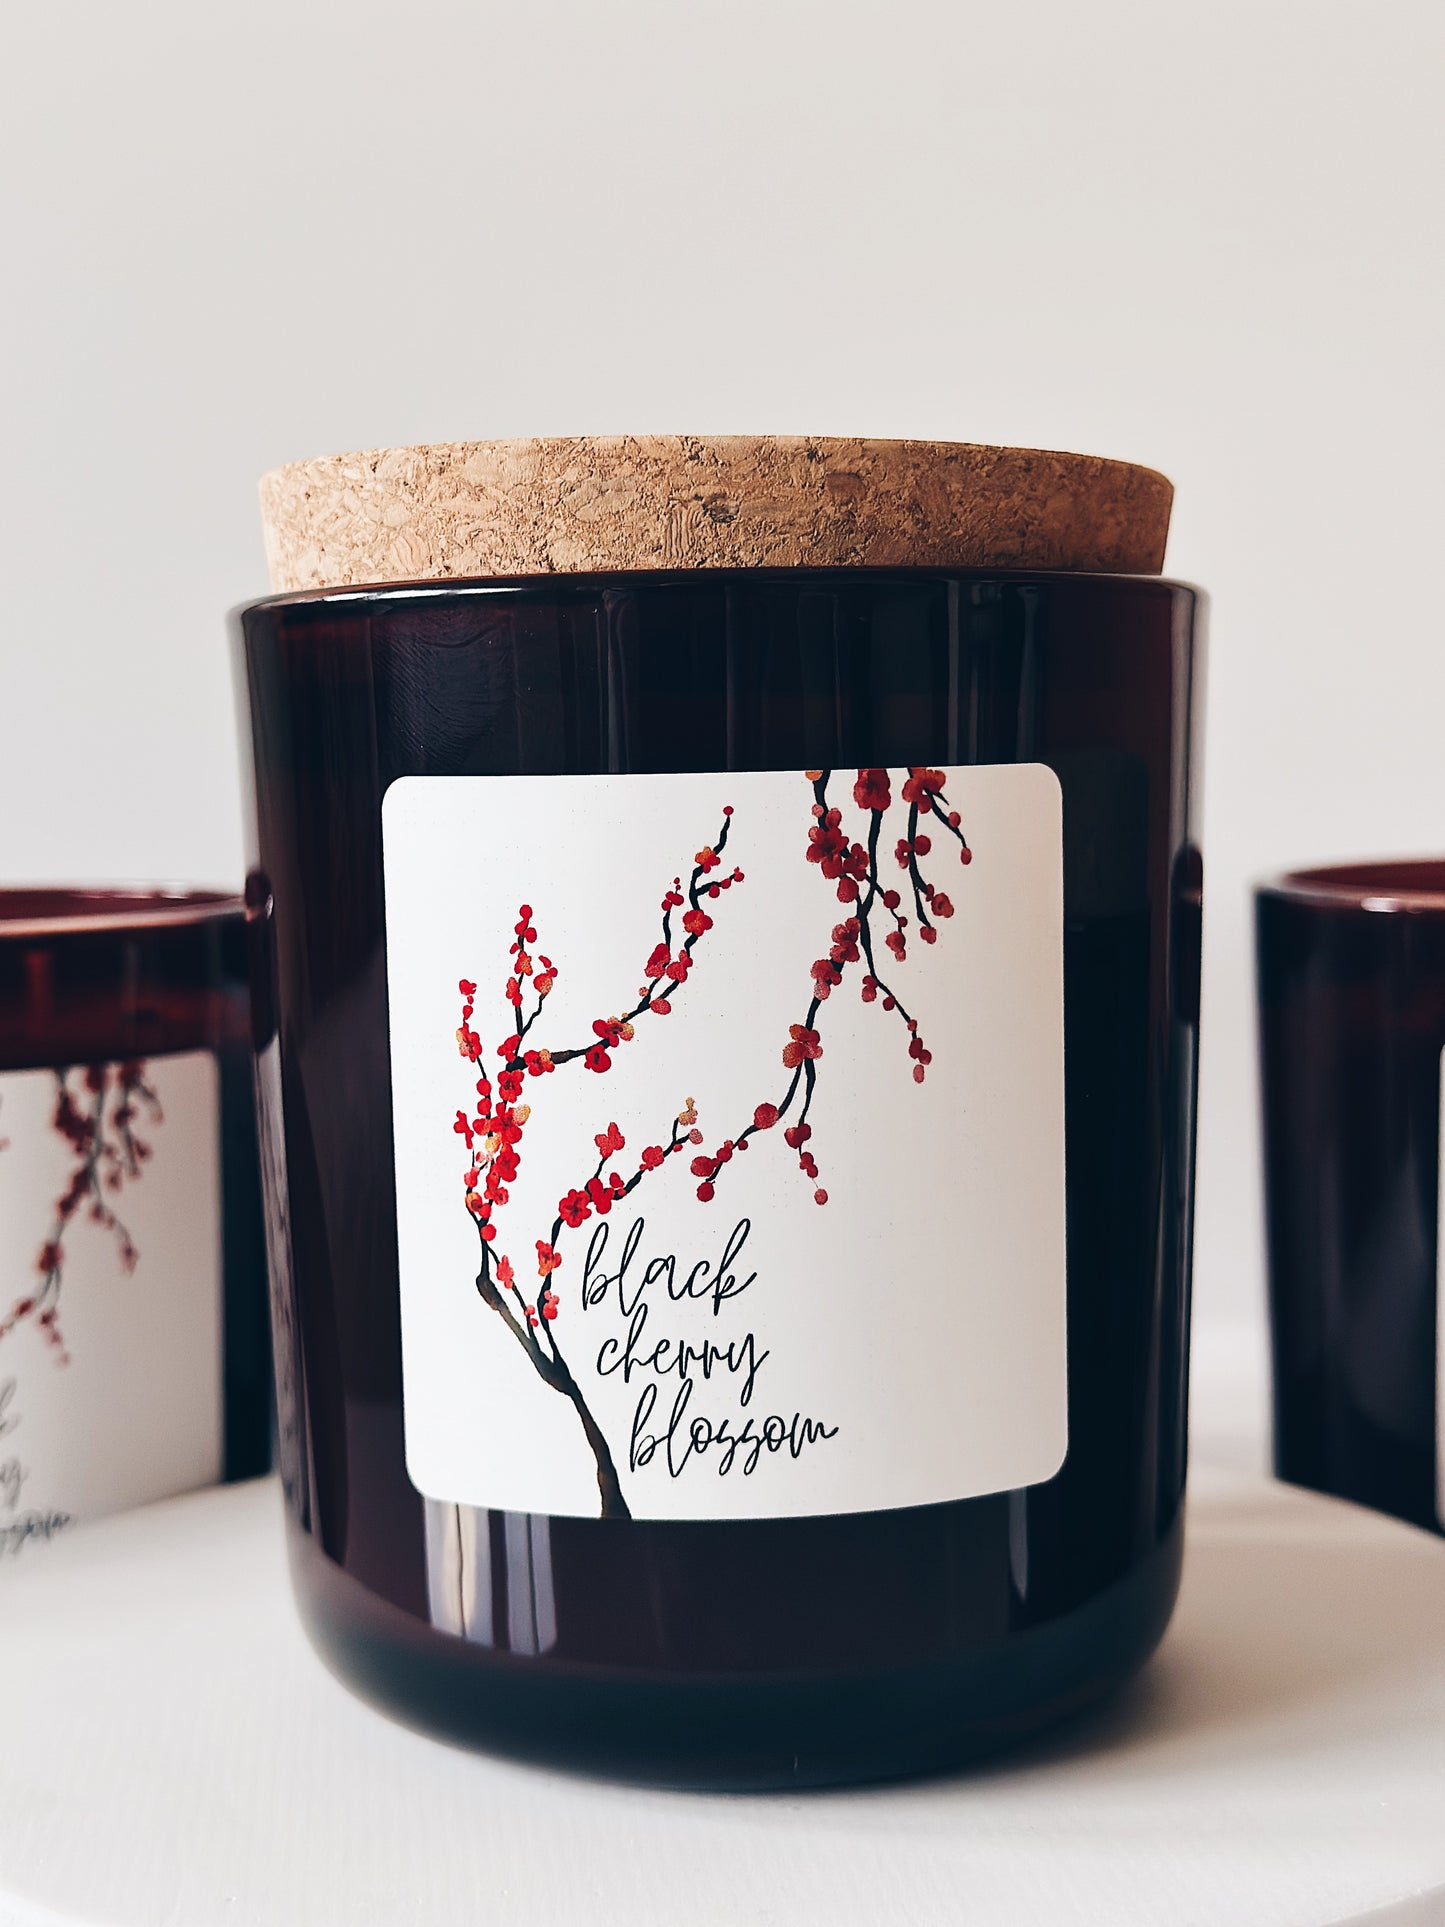 en mer LTD | black cherry blossom | limited batch soy wax candle